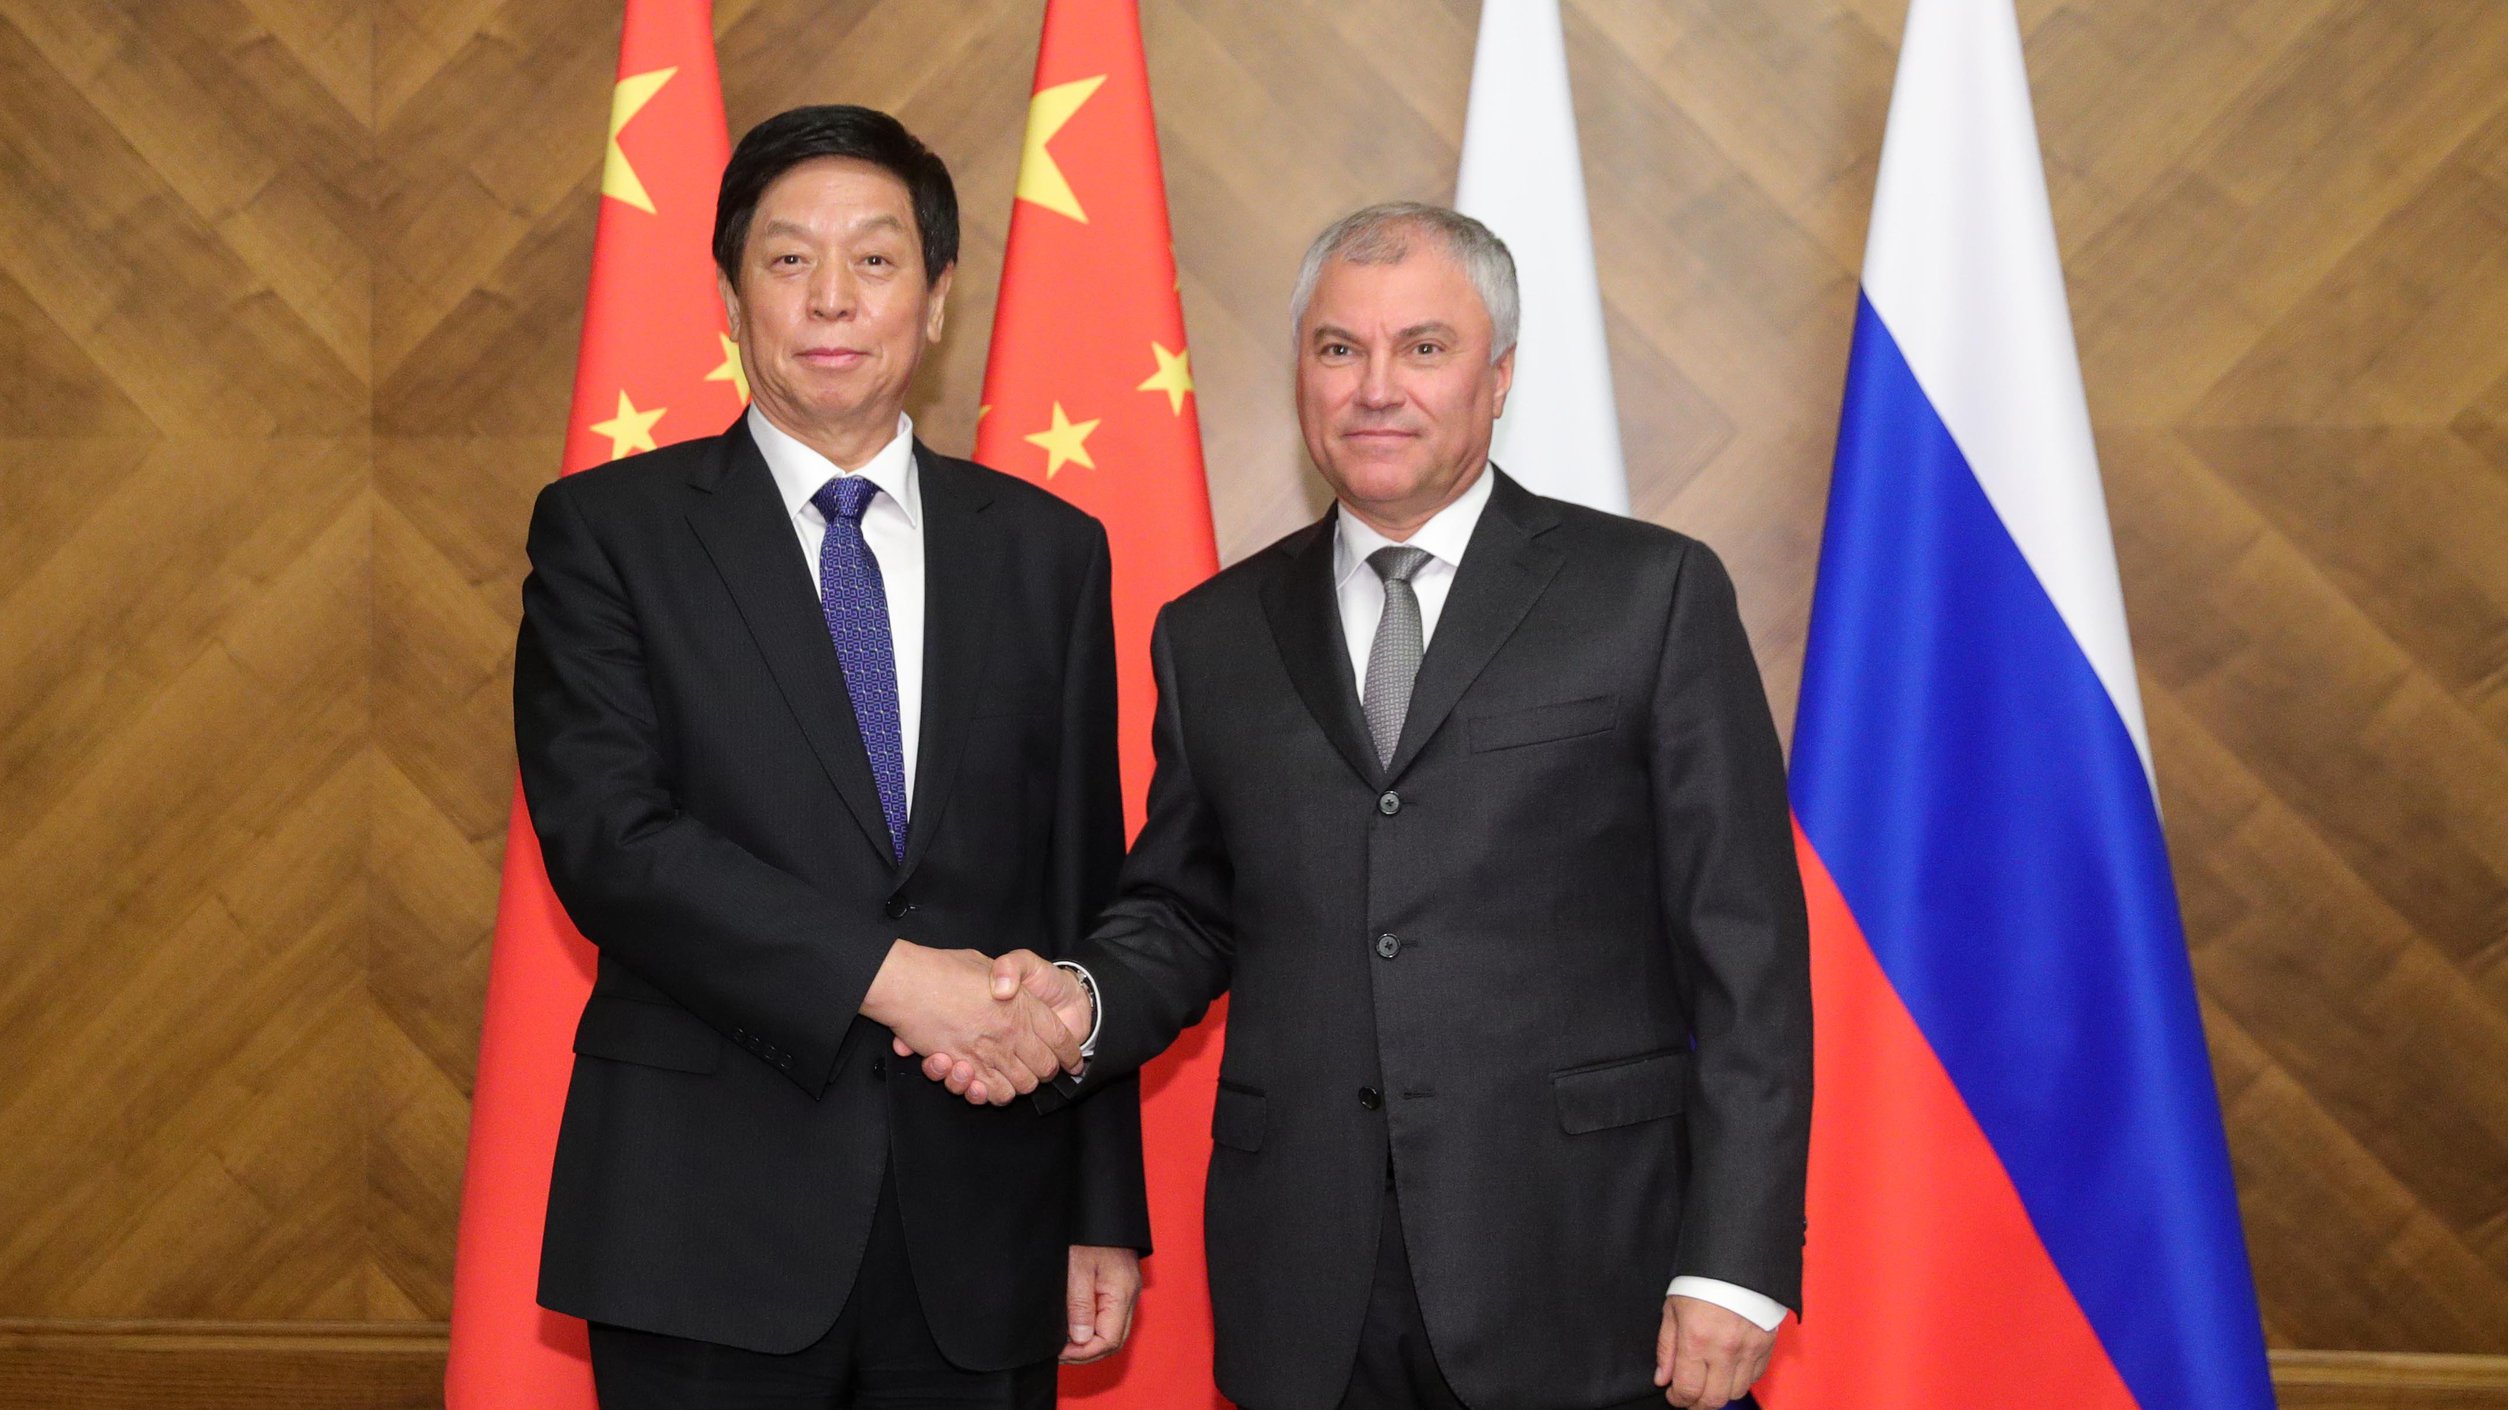 Вячеслав Володин и Ли Чжаньшу обсудили вопросы межпарламентского сотрудничества России и Китая и противодействия санкциям Запада